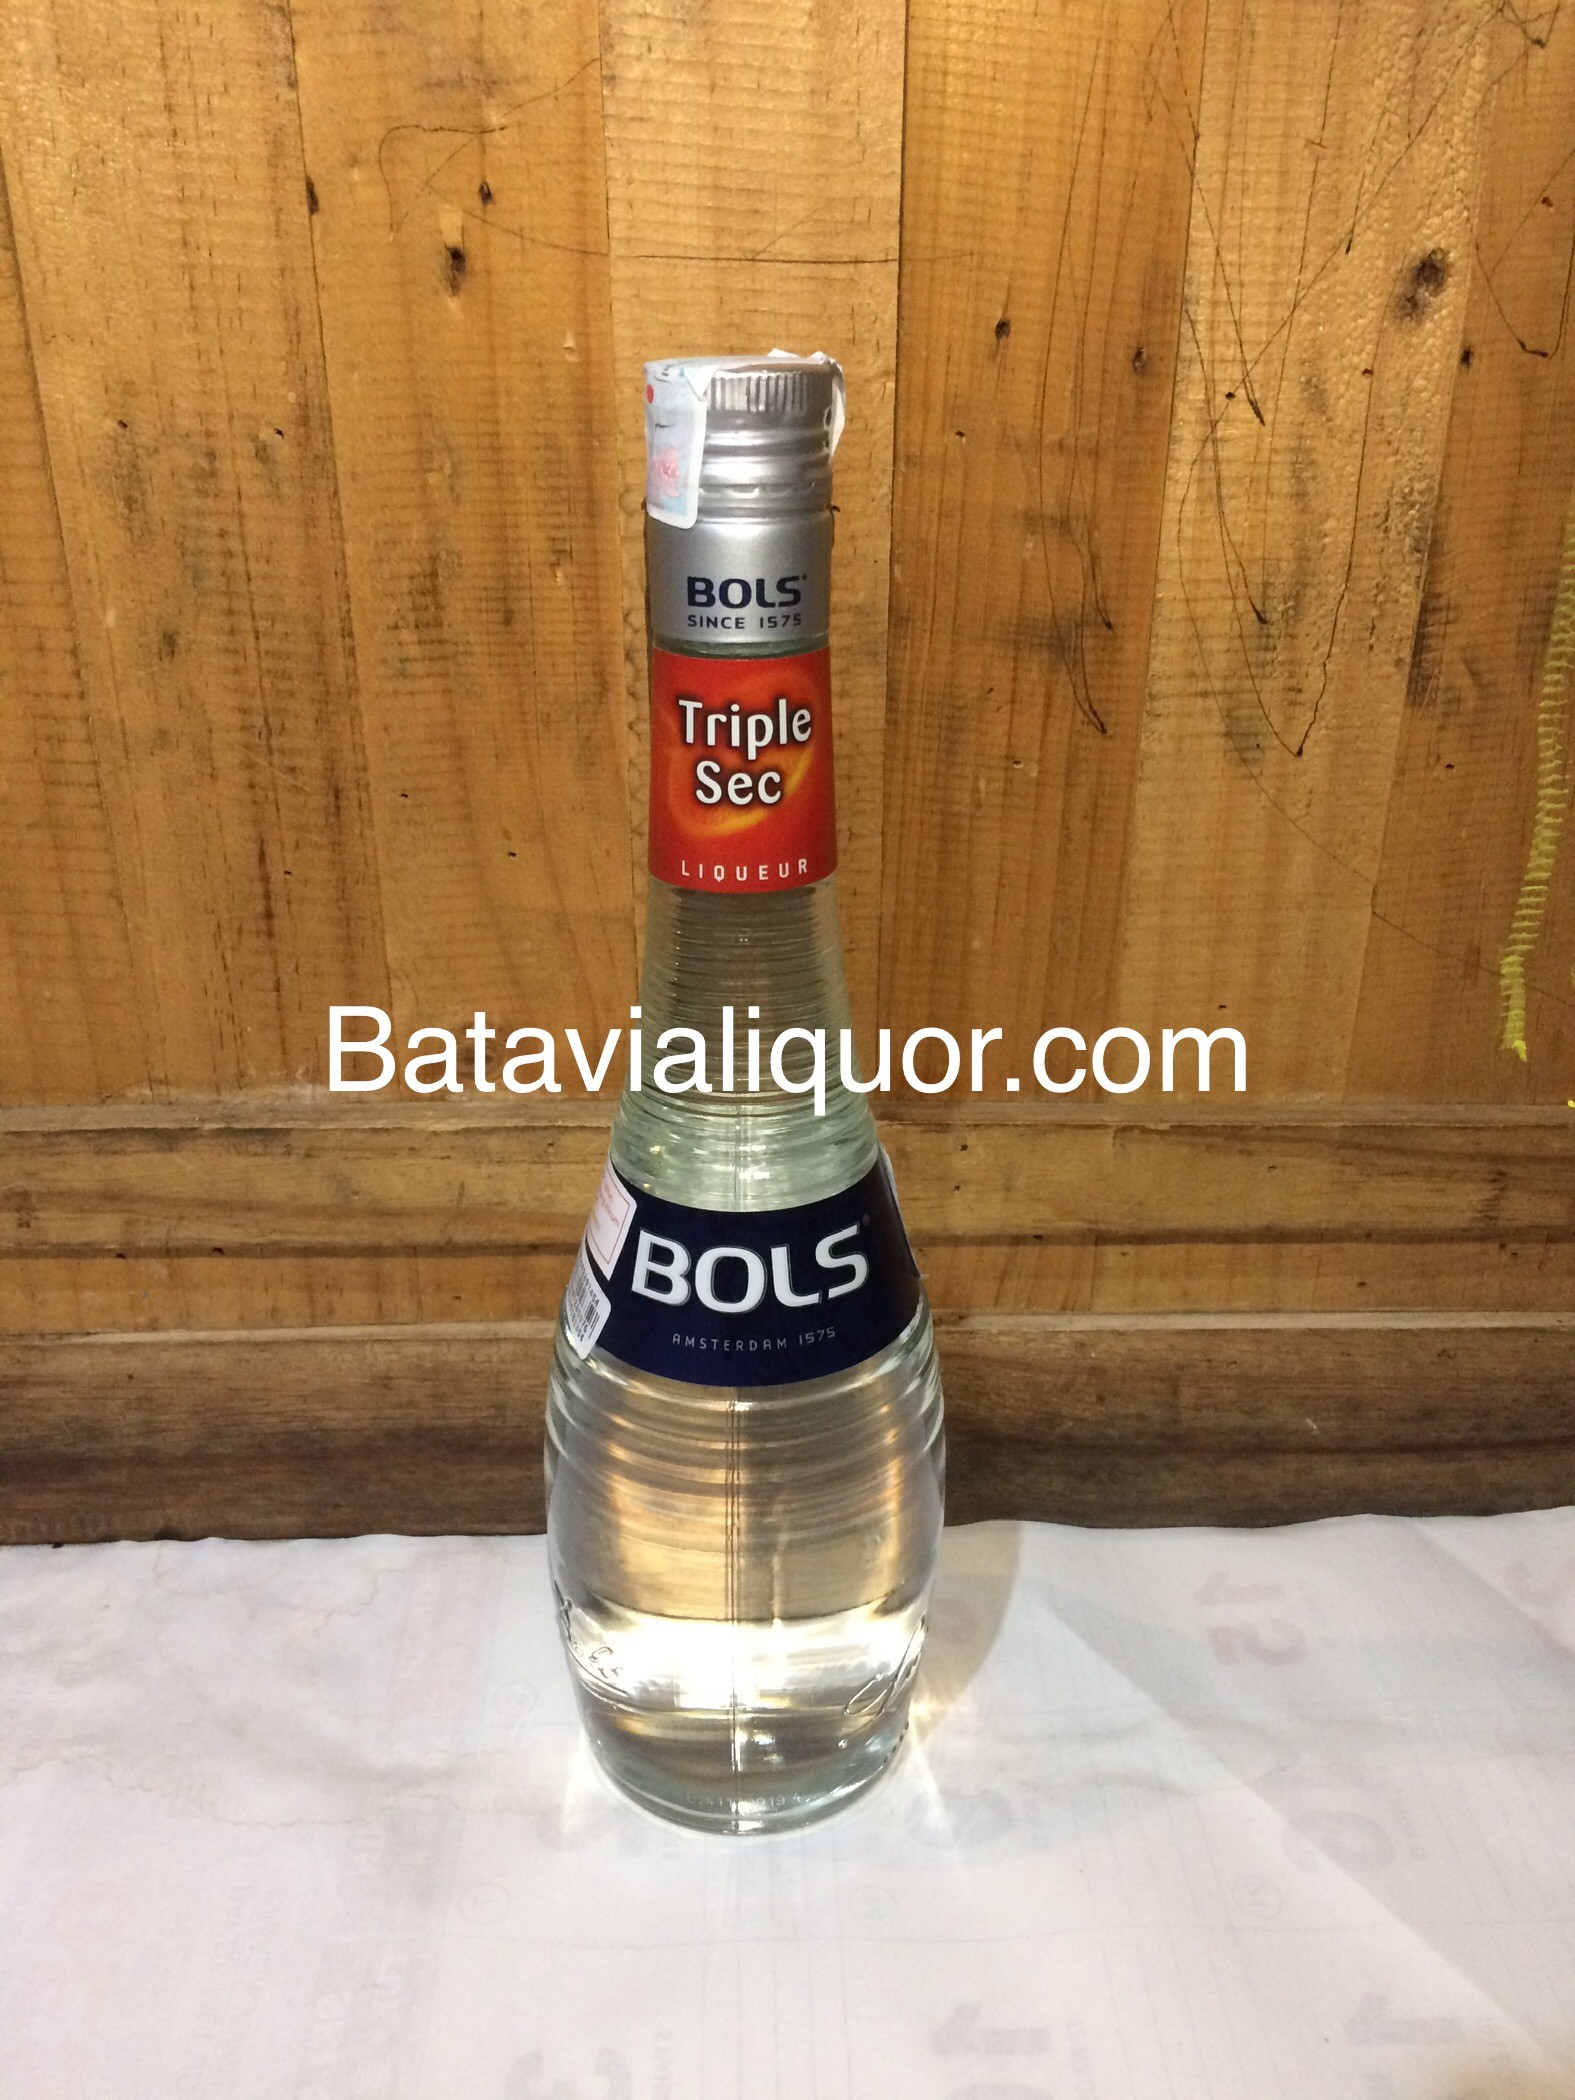 Sec | Bols Batavia | Liquor Triple 700ml Liqueur